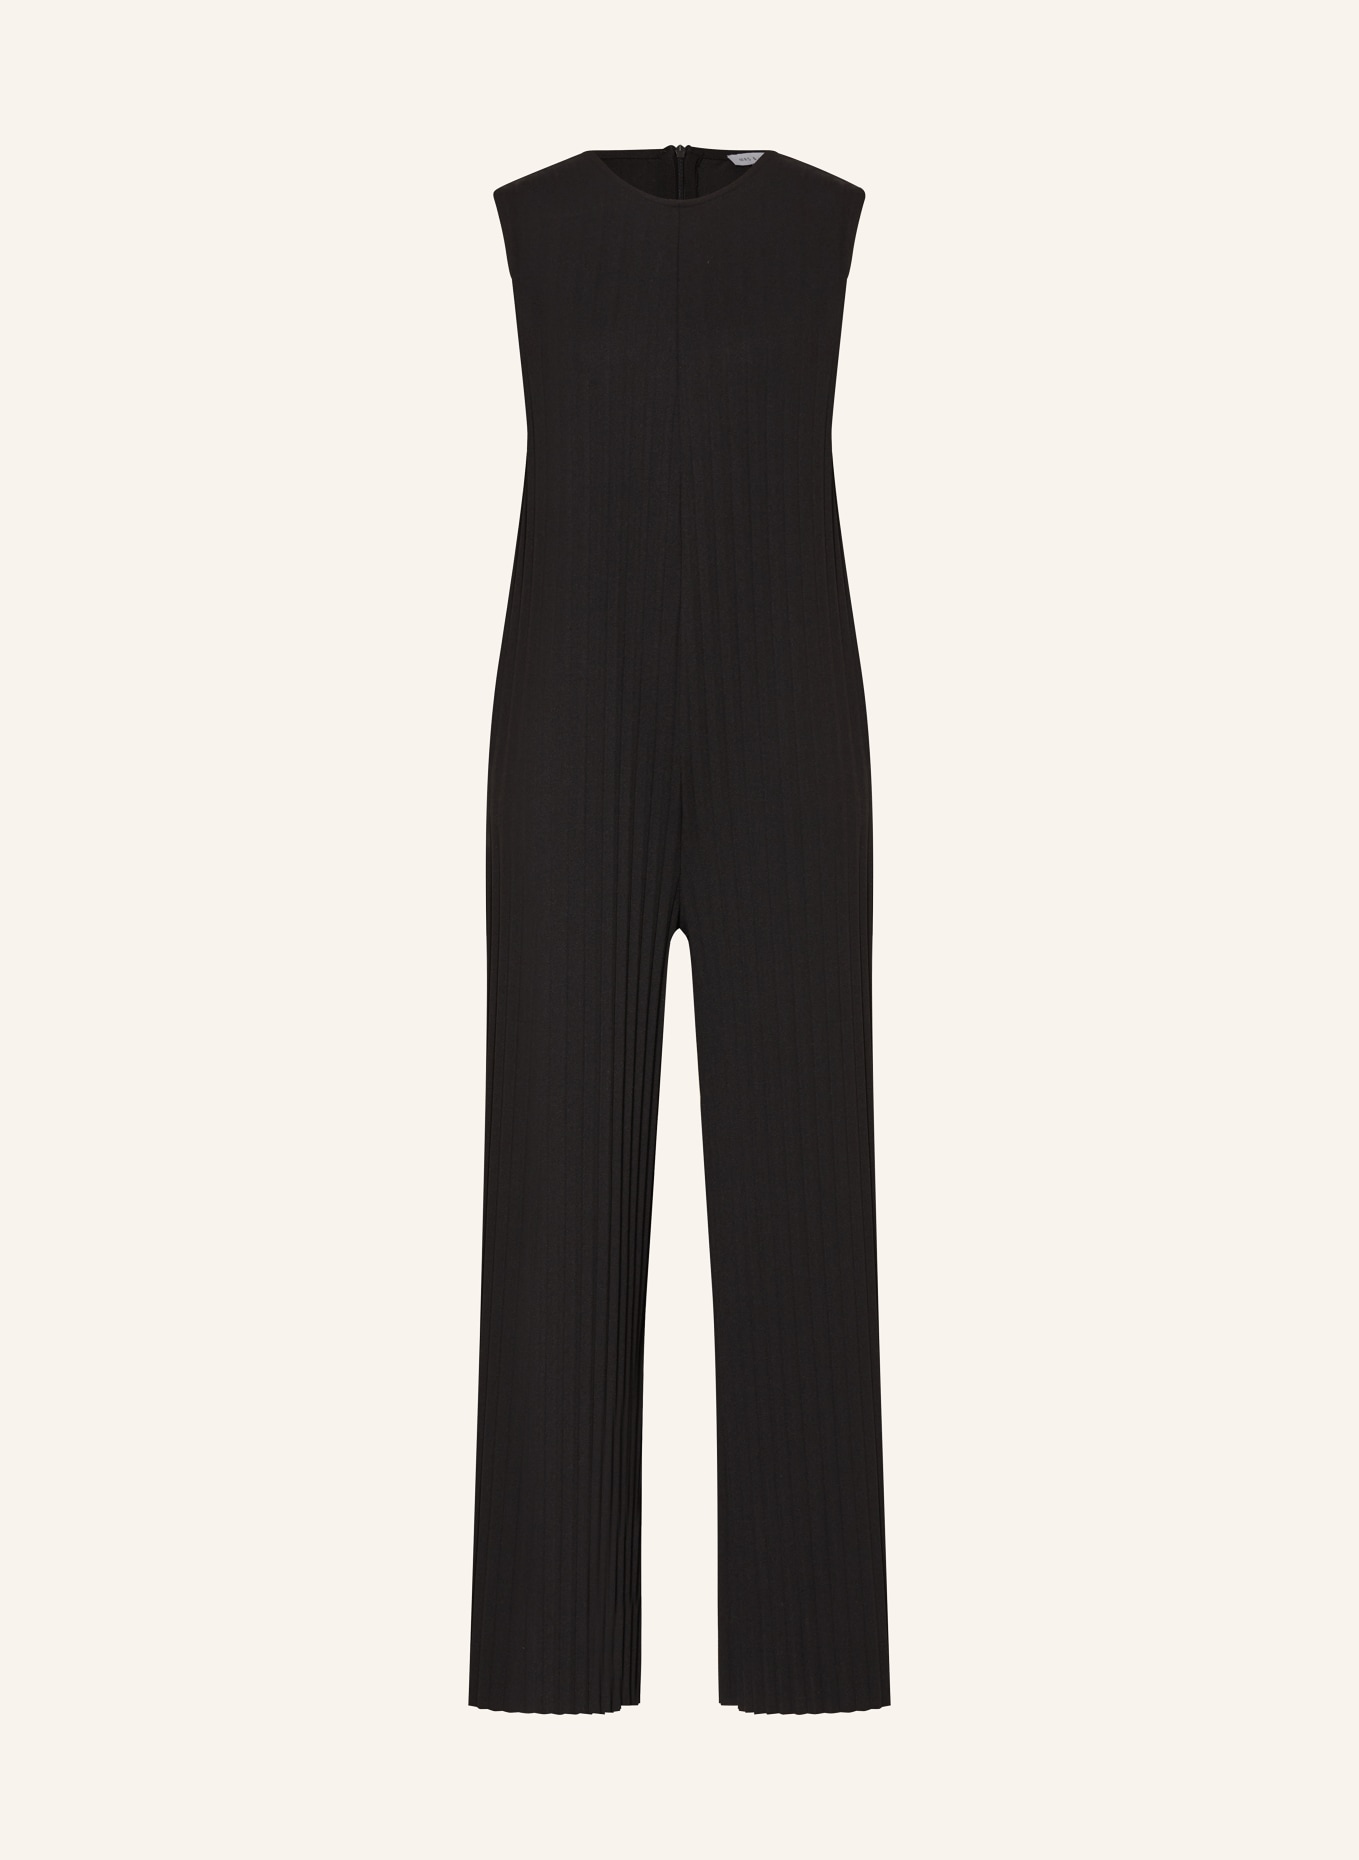 MRS & HUGS Jumpsuit mit Plissees, Farbe: SCHWARZ (Bild 1)